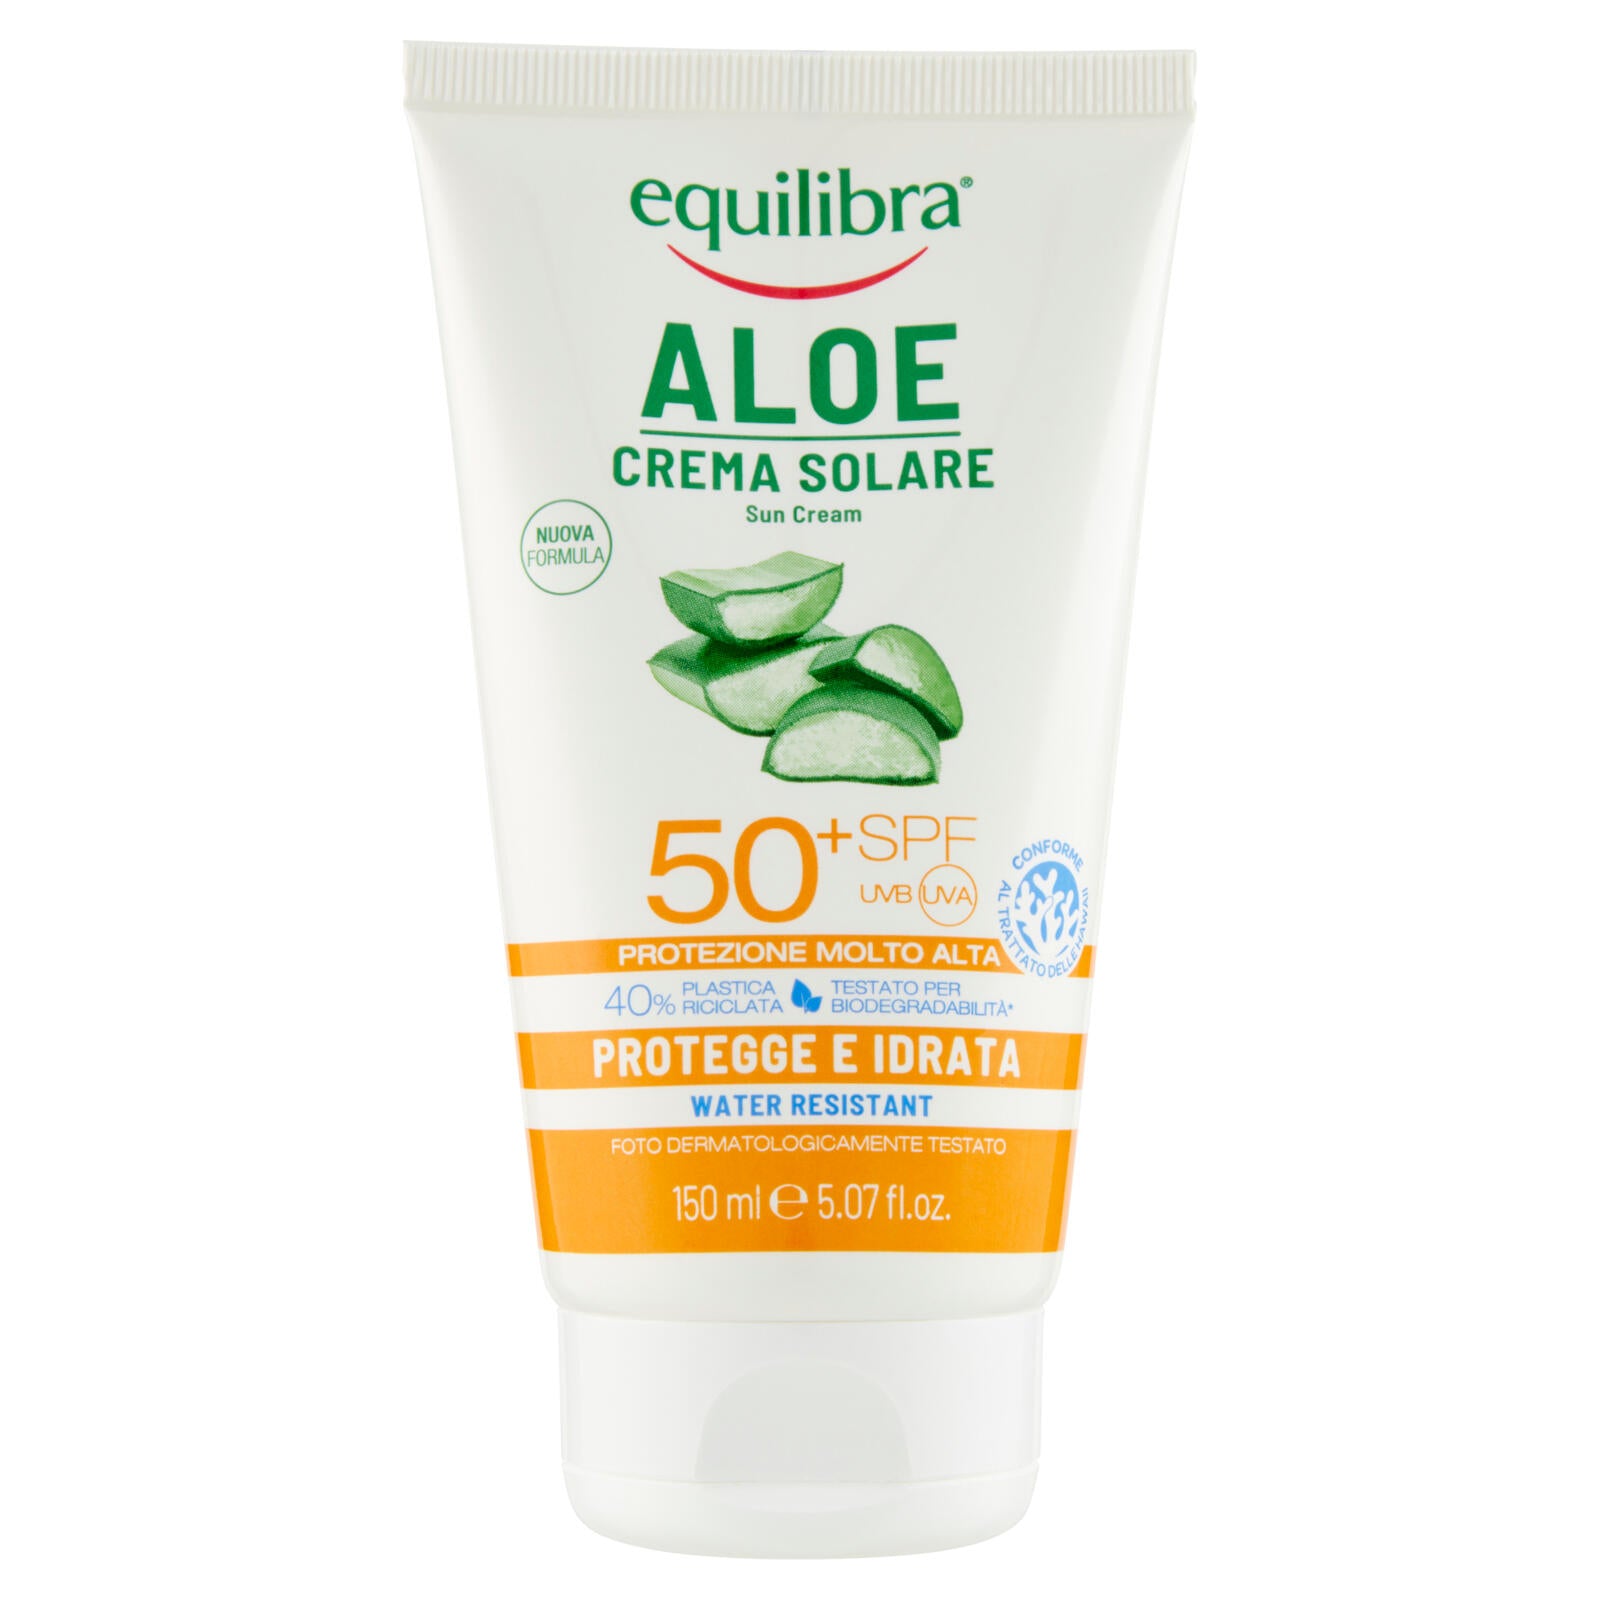 equilibra Aloe Crema Solare 50⁺ SPF Protezione Molto Alta 150 ml